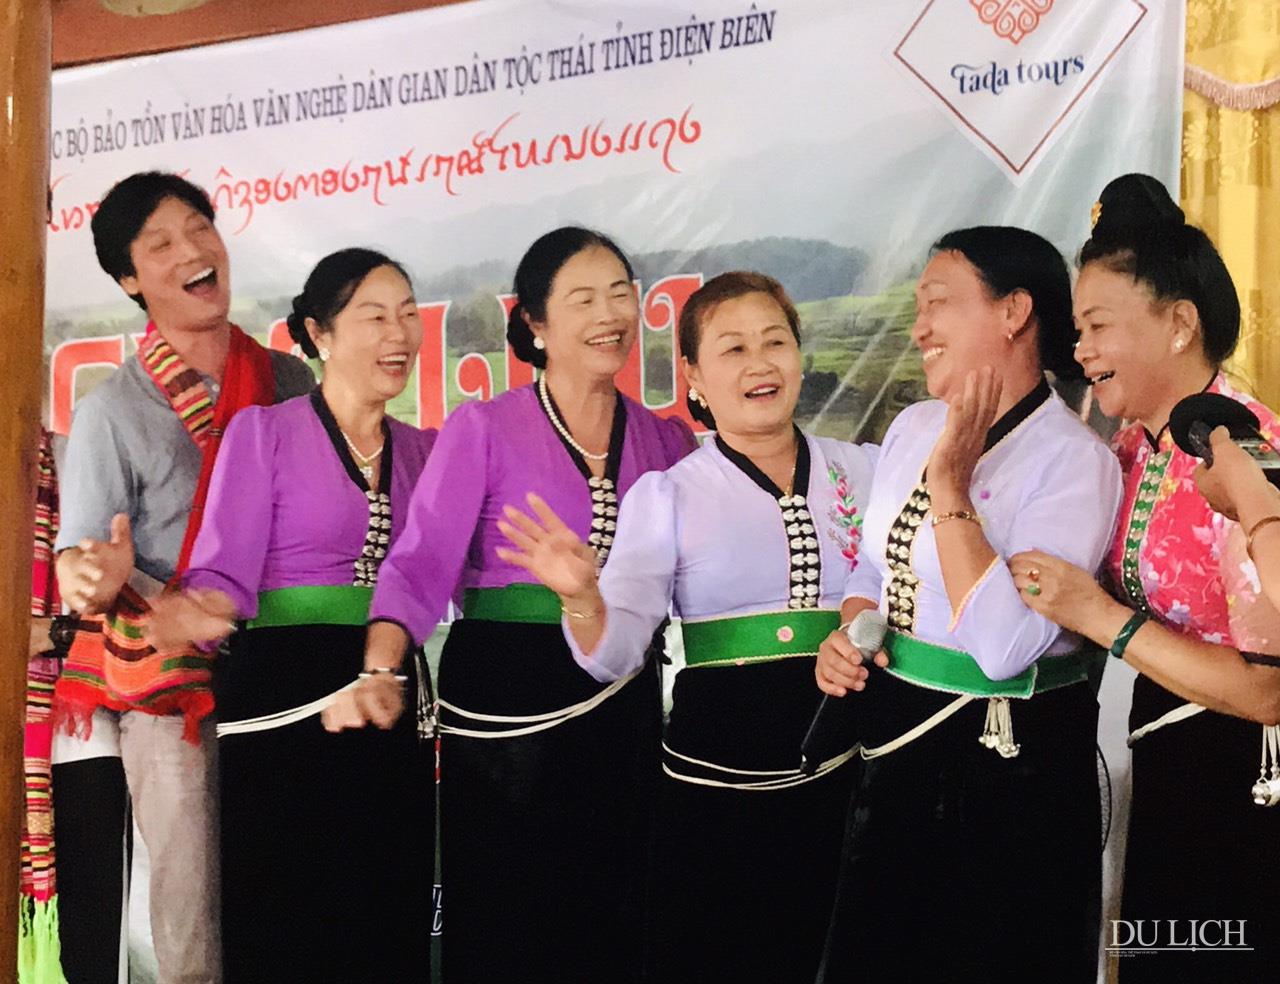 Các thành viên của Câu lạc bộ bảo tồn văn hóa văn nghệ dân gian dân tộc Thái tỉnh Điện Biên giao lưu cùng du khách